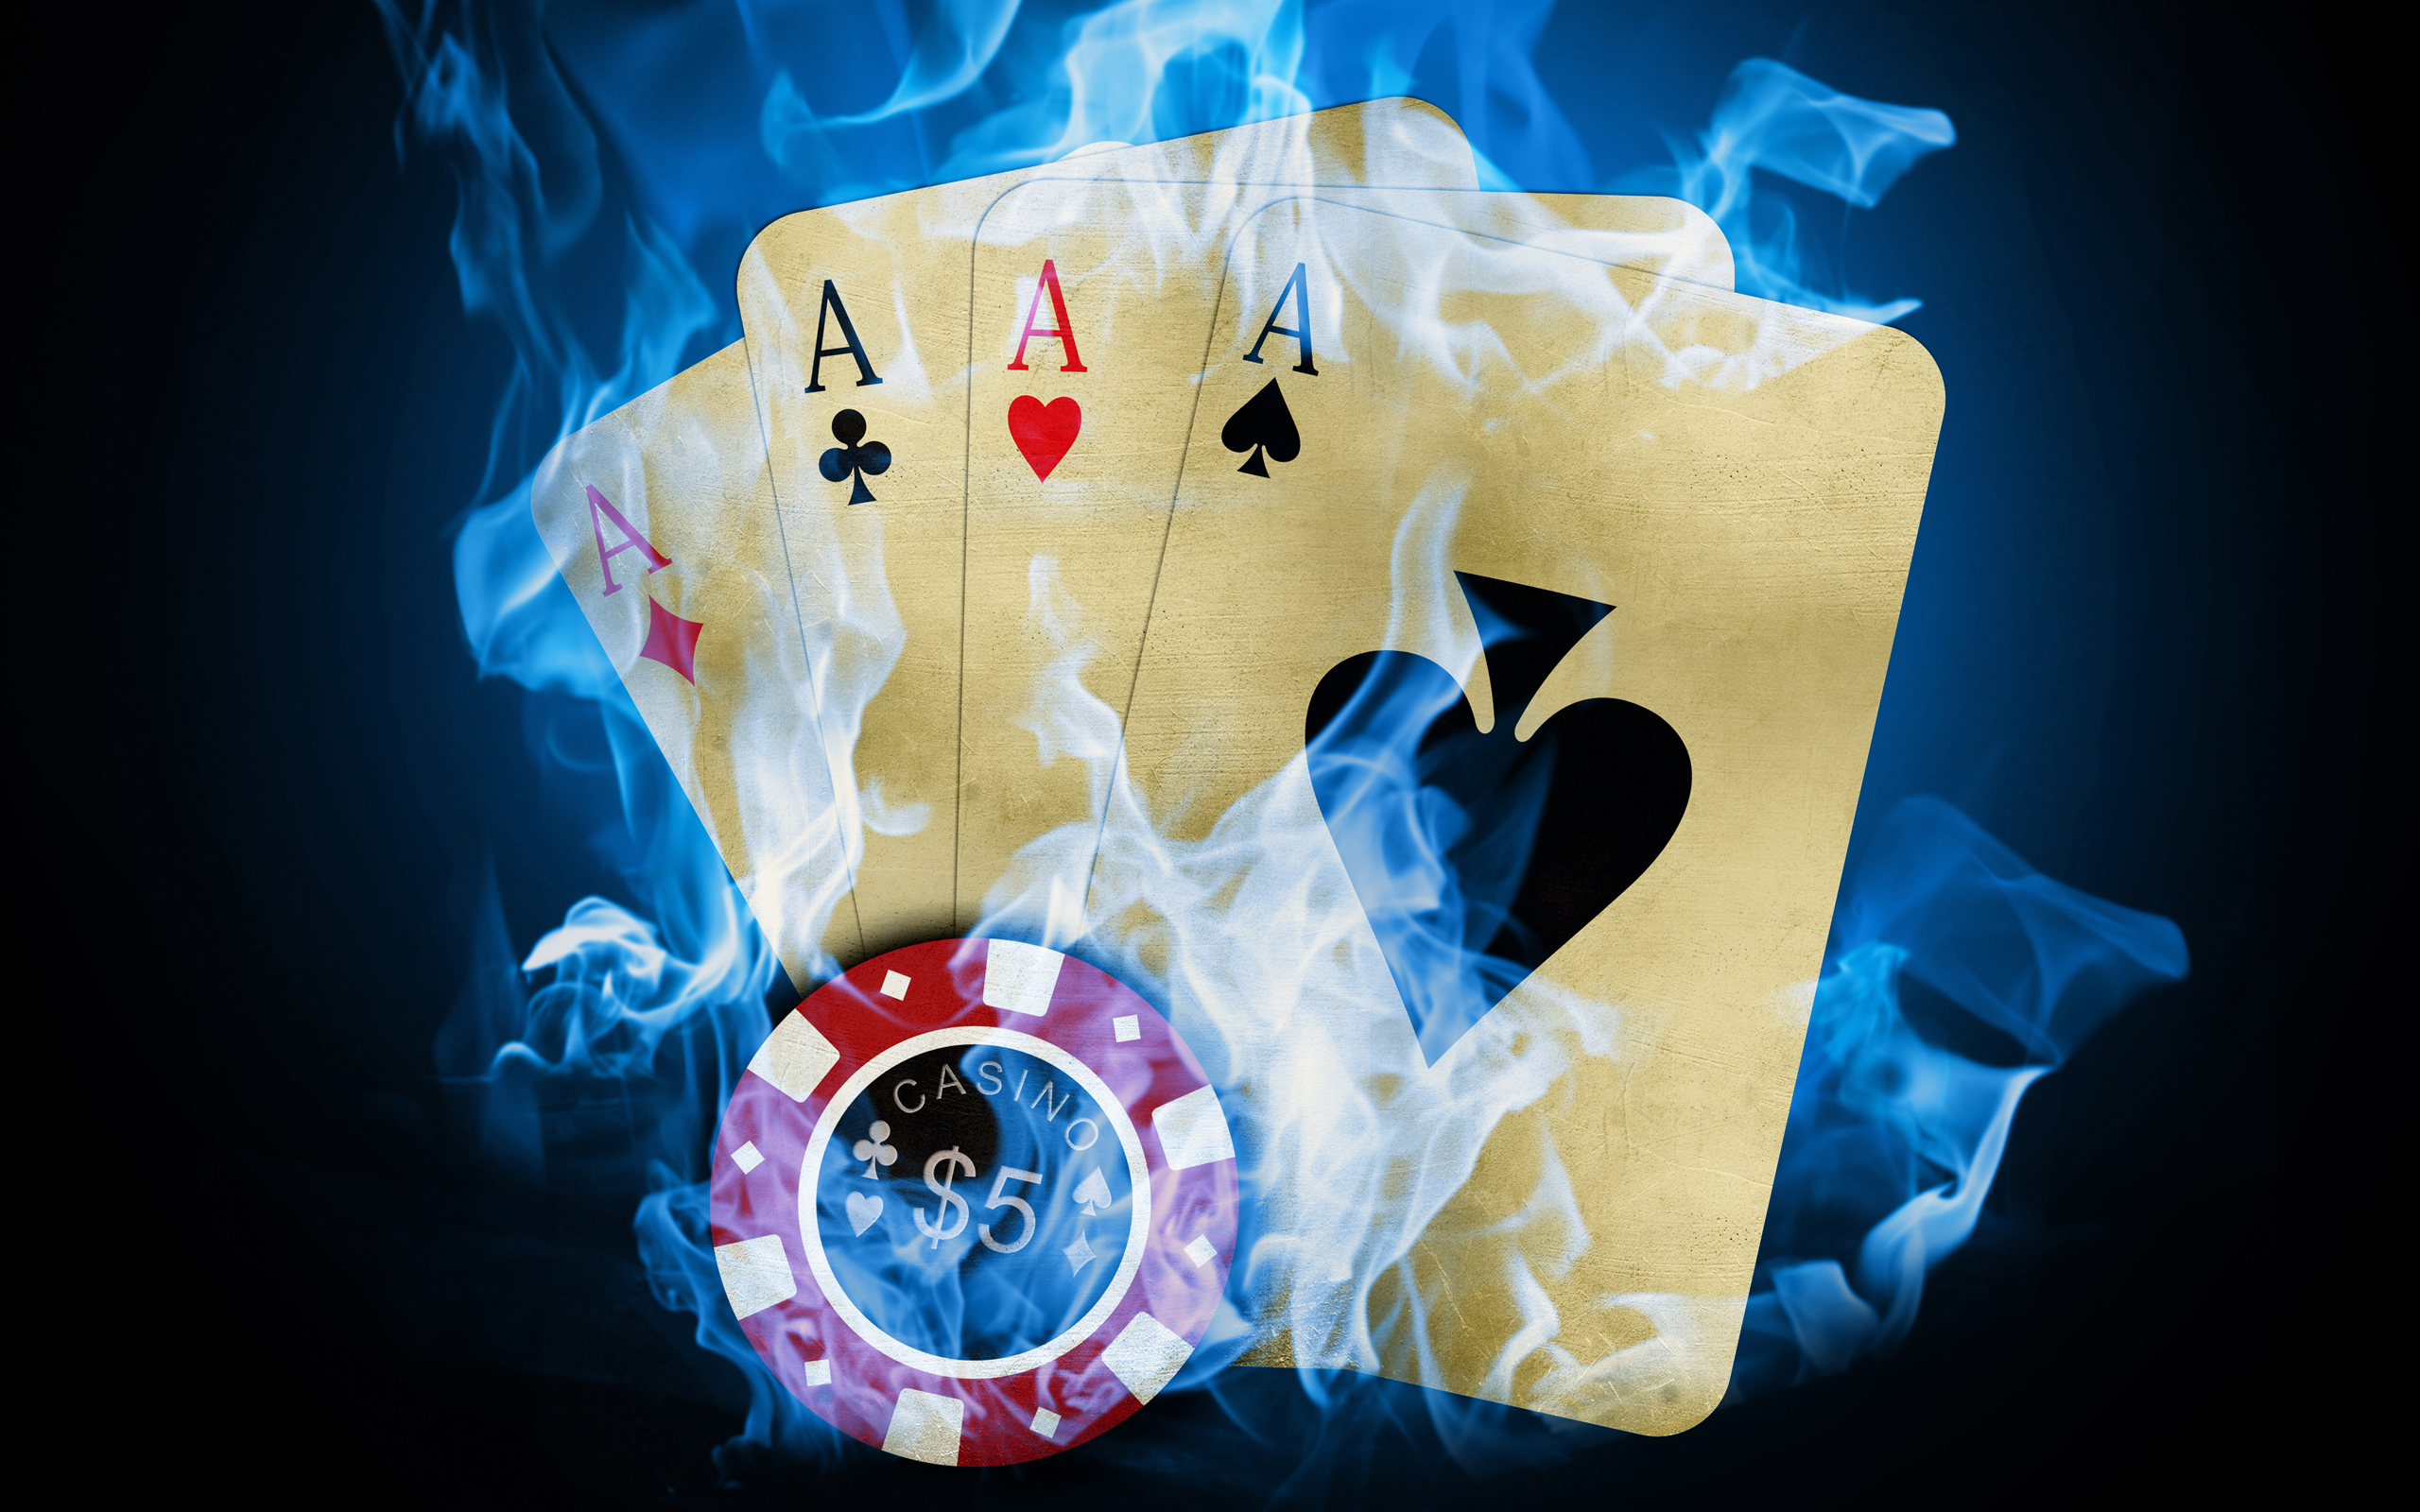 Игры казино - правила и стратегия русского/оазис покера (Oasis Poker